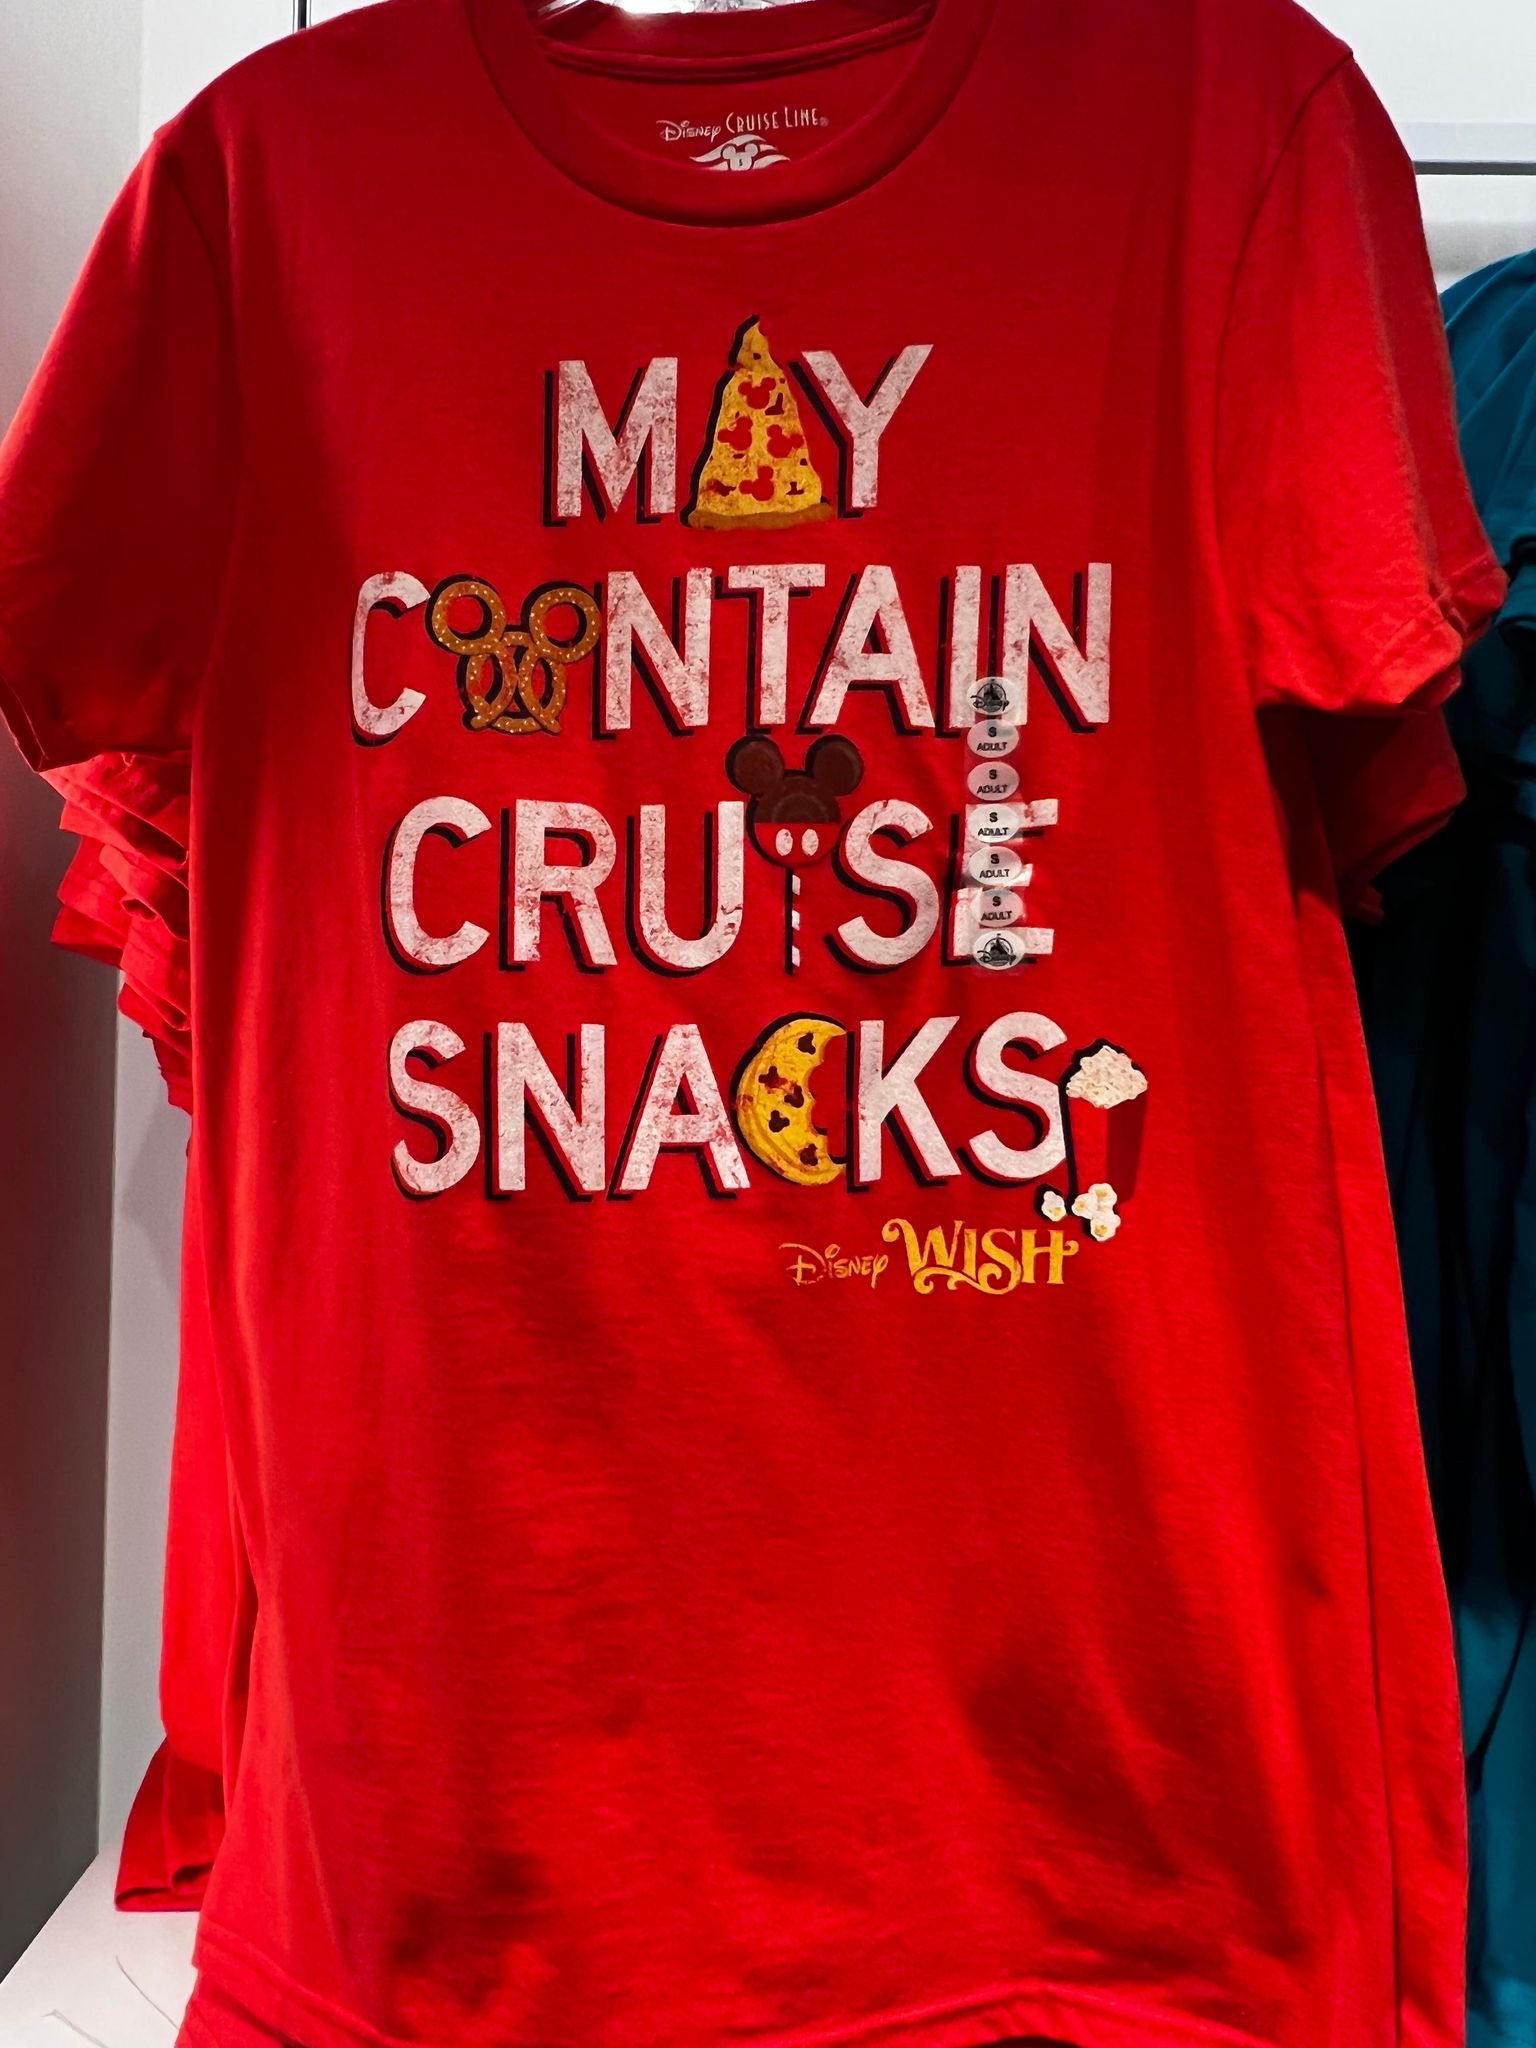 Disney Wish snacks t-shirt